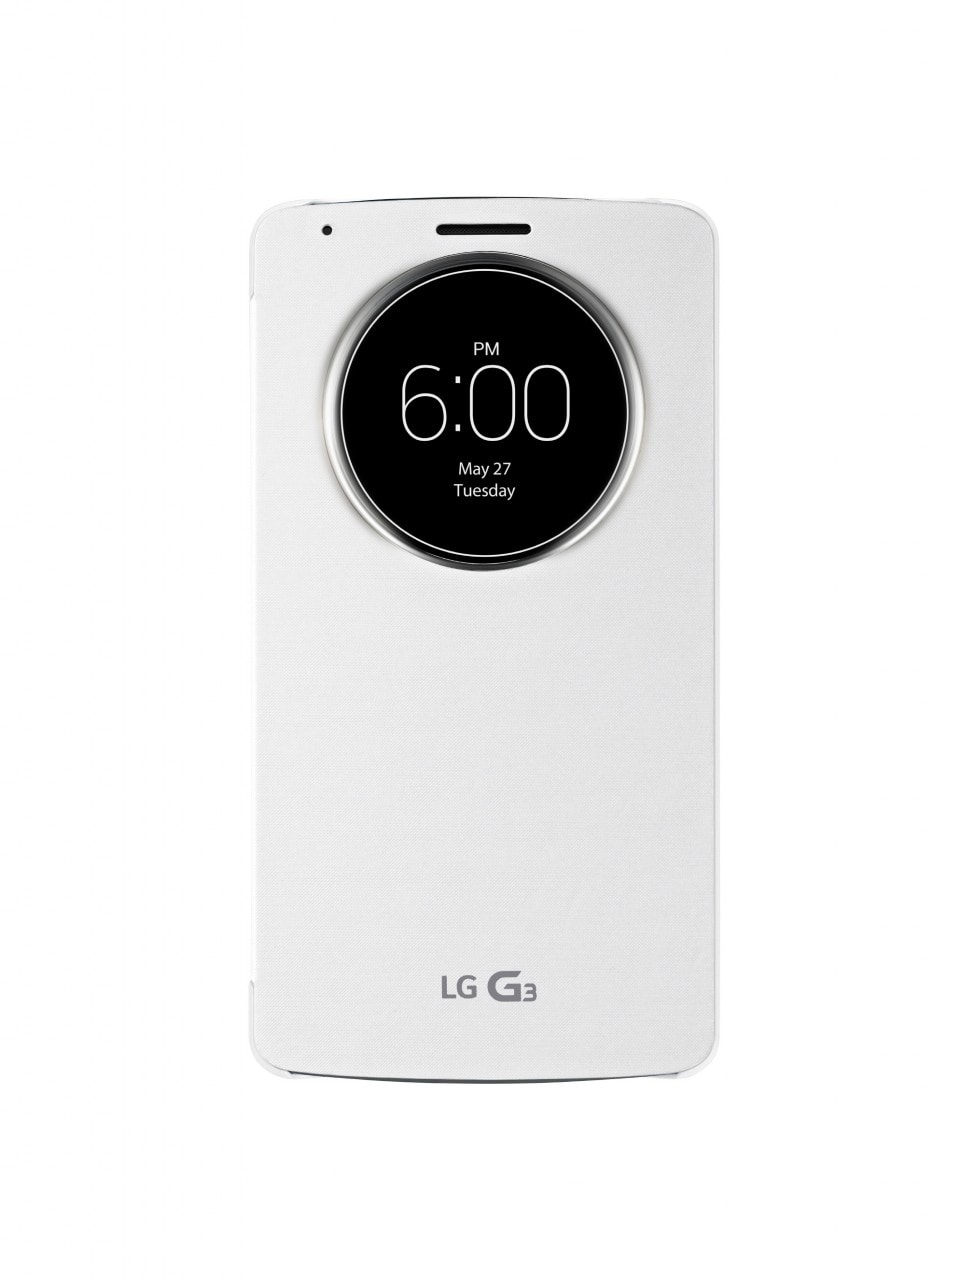 QuickCircle™ Case per LG G3 presentate in anticipo sul lancio (foto e video)